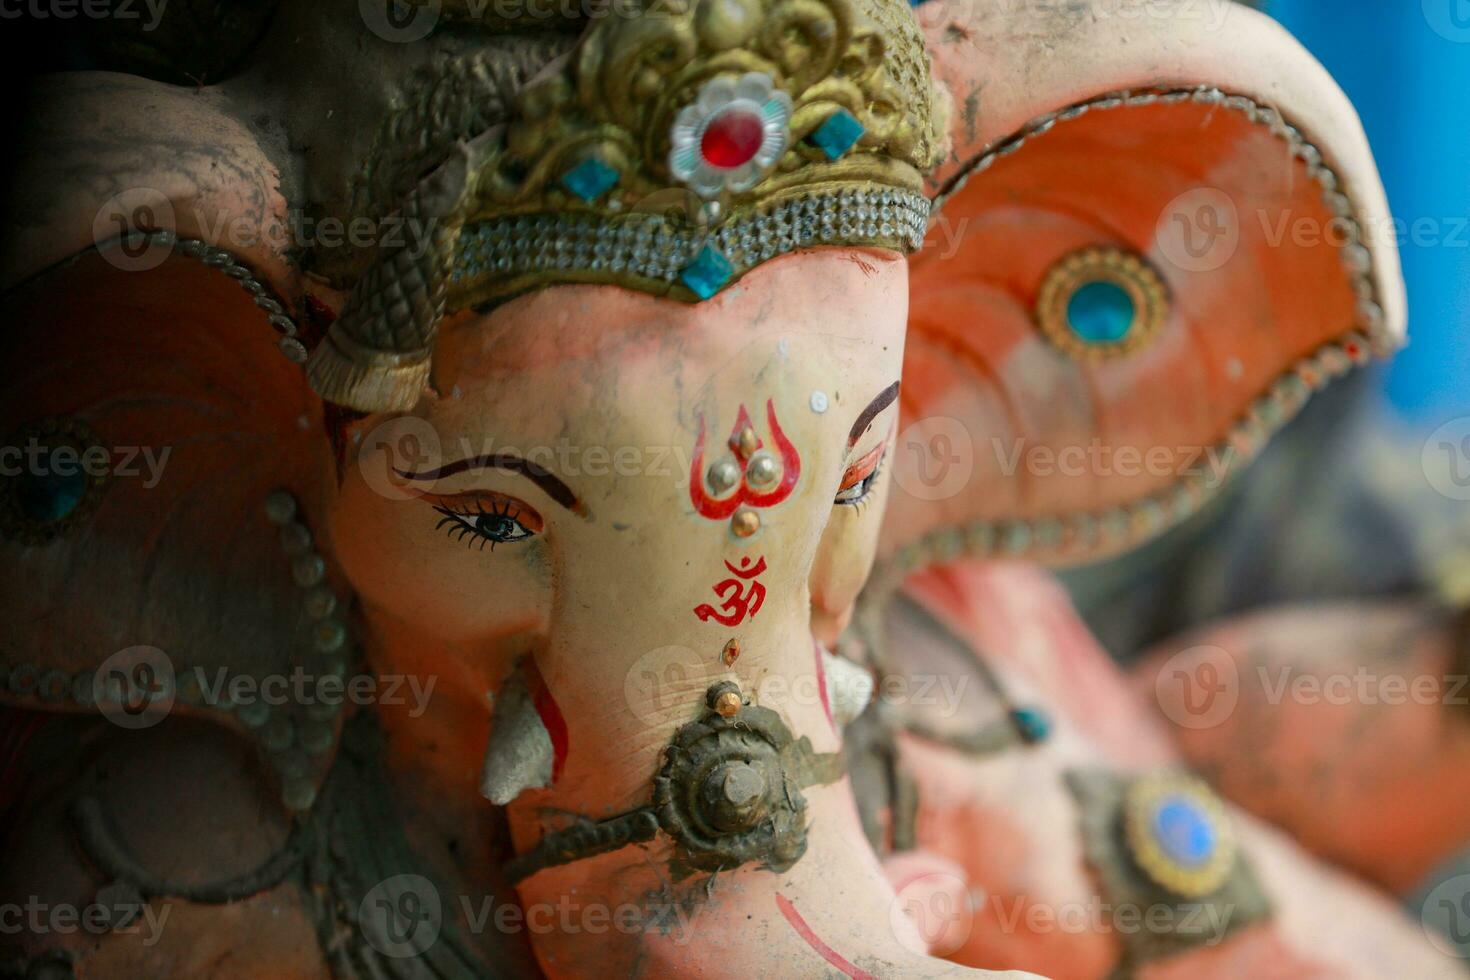 Indisch heer ganesha standbeeld, idolen van heer ganesh voor aanstaande ganapati festival in Indië. foto